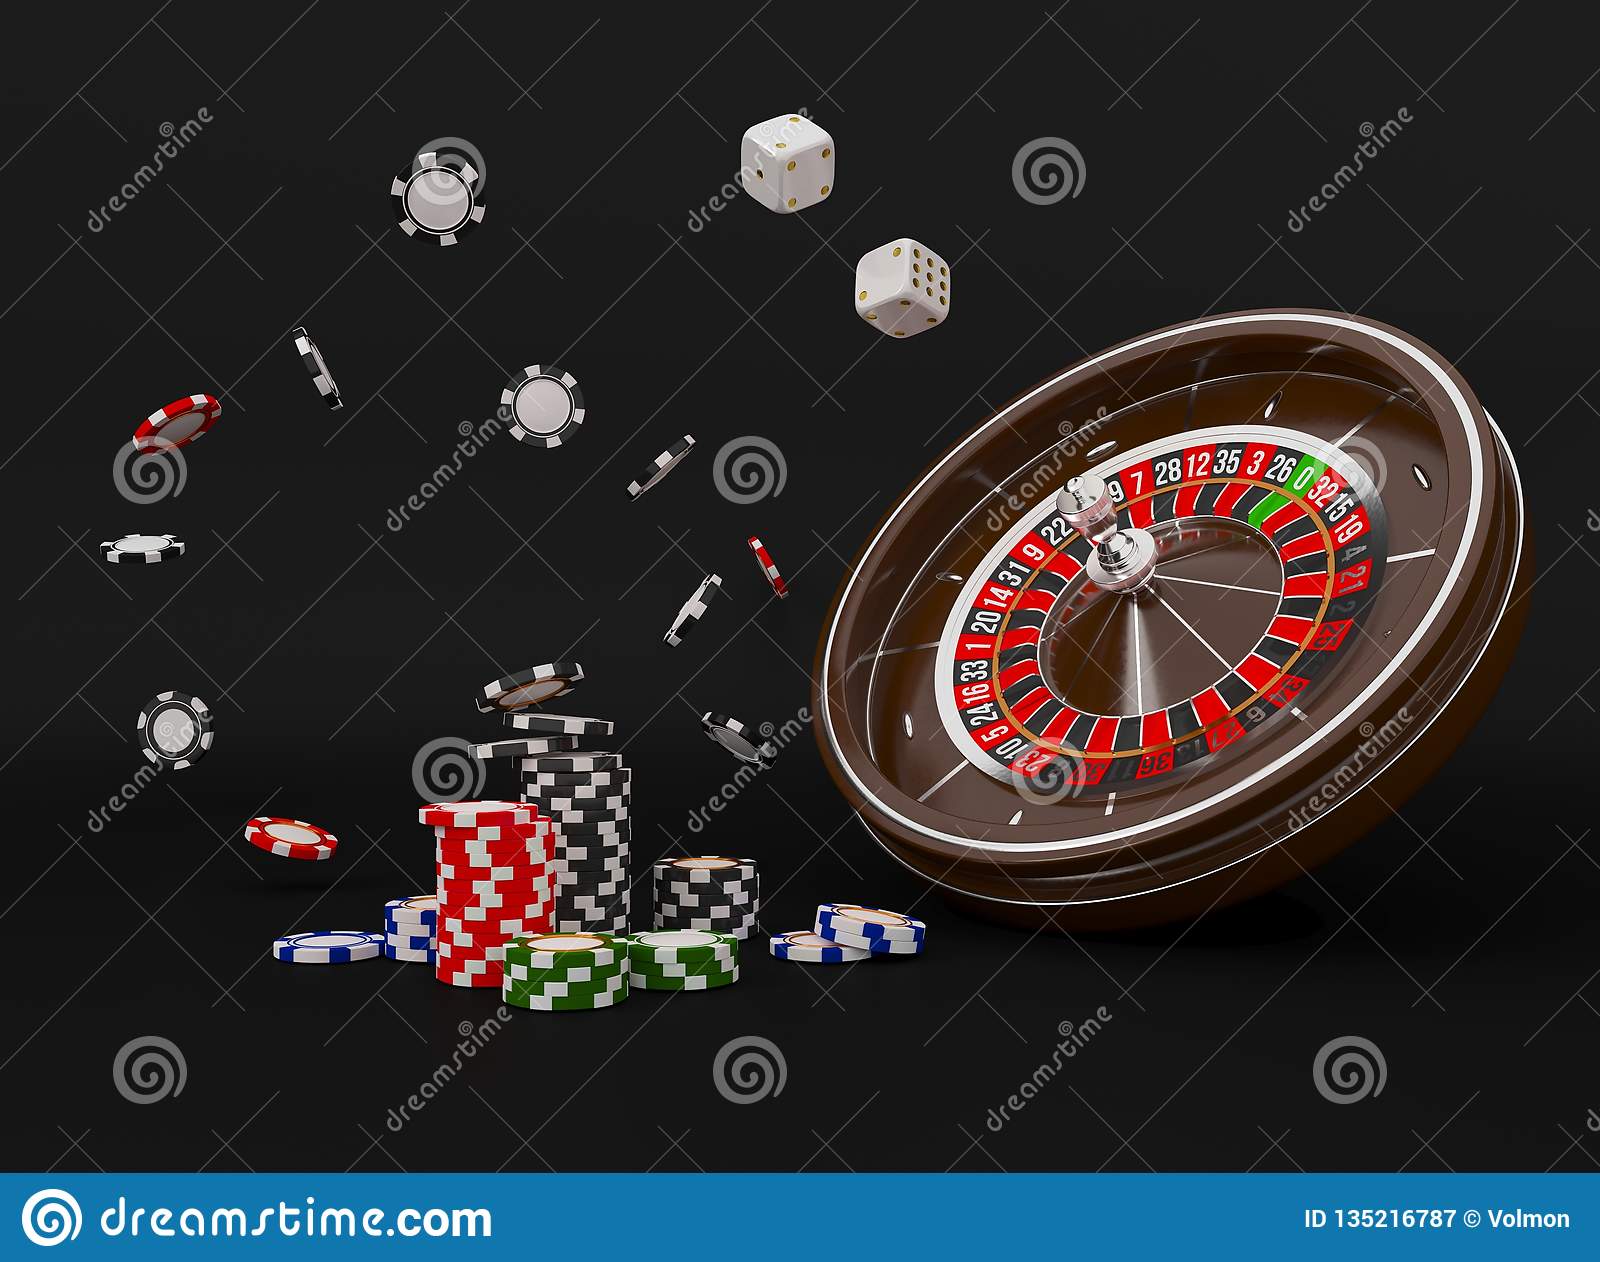 Juegos de casino gratis para jugar tragamonedas